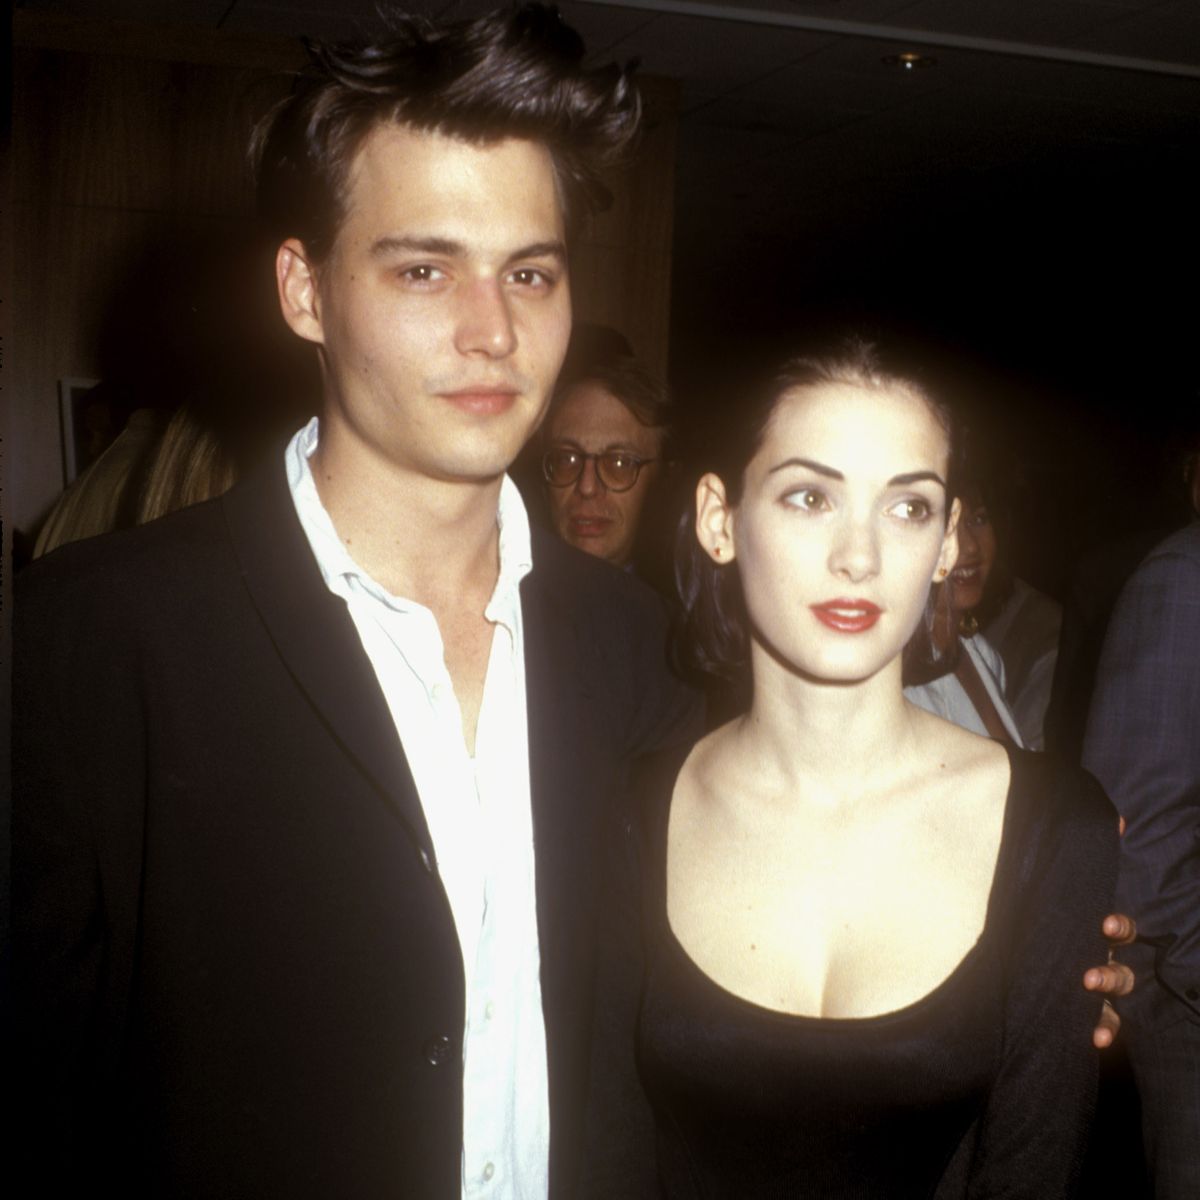 Một trời một vực với Amber Heard, Johnny Depp từng có chuyện tình đẹp nhất cuộc đời cùng 1 nữ minh tinh và cái kết bất ngờ - Ảnh 2.